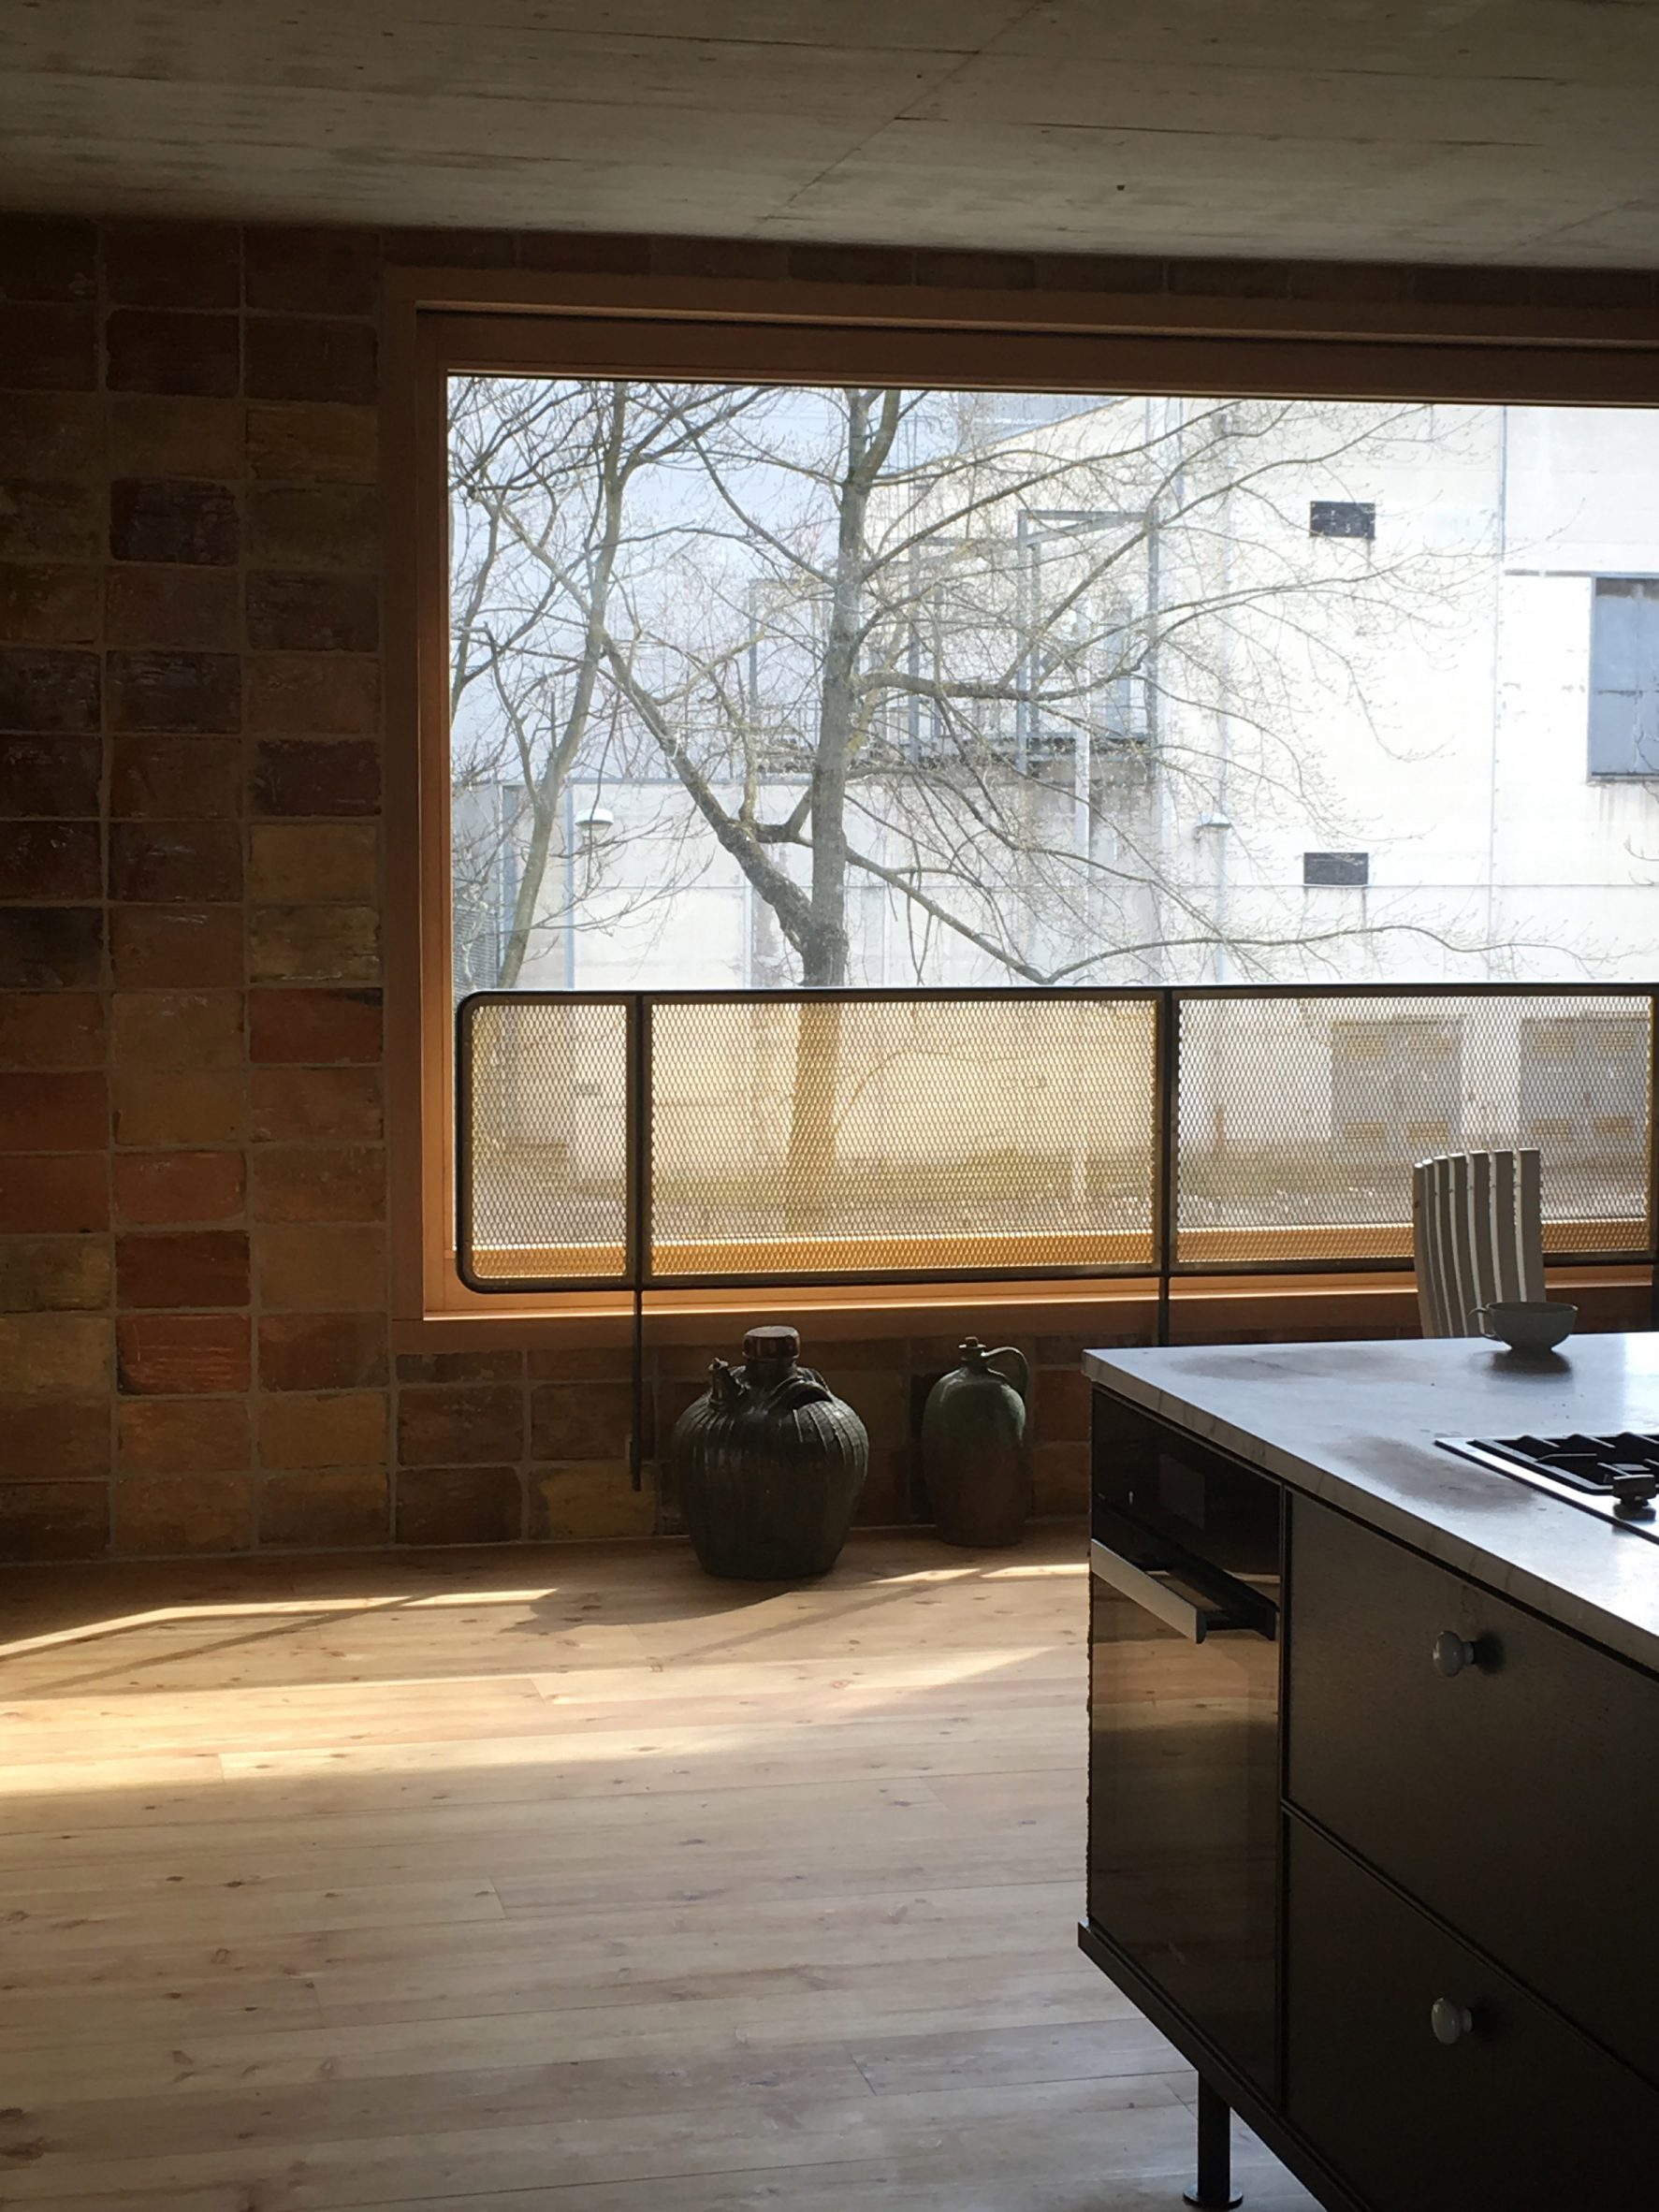 Kitchen with brick walls and wooden floors in interior by Philipp von Matt